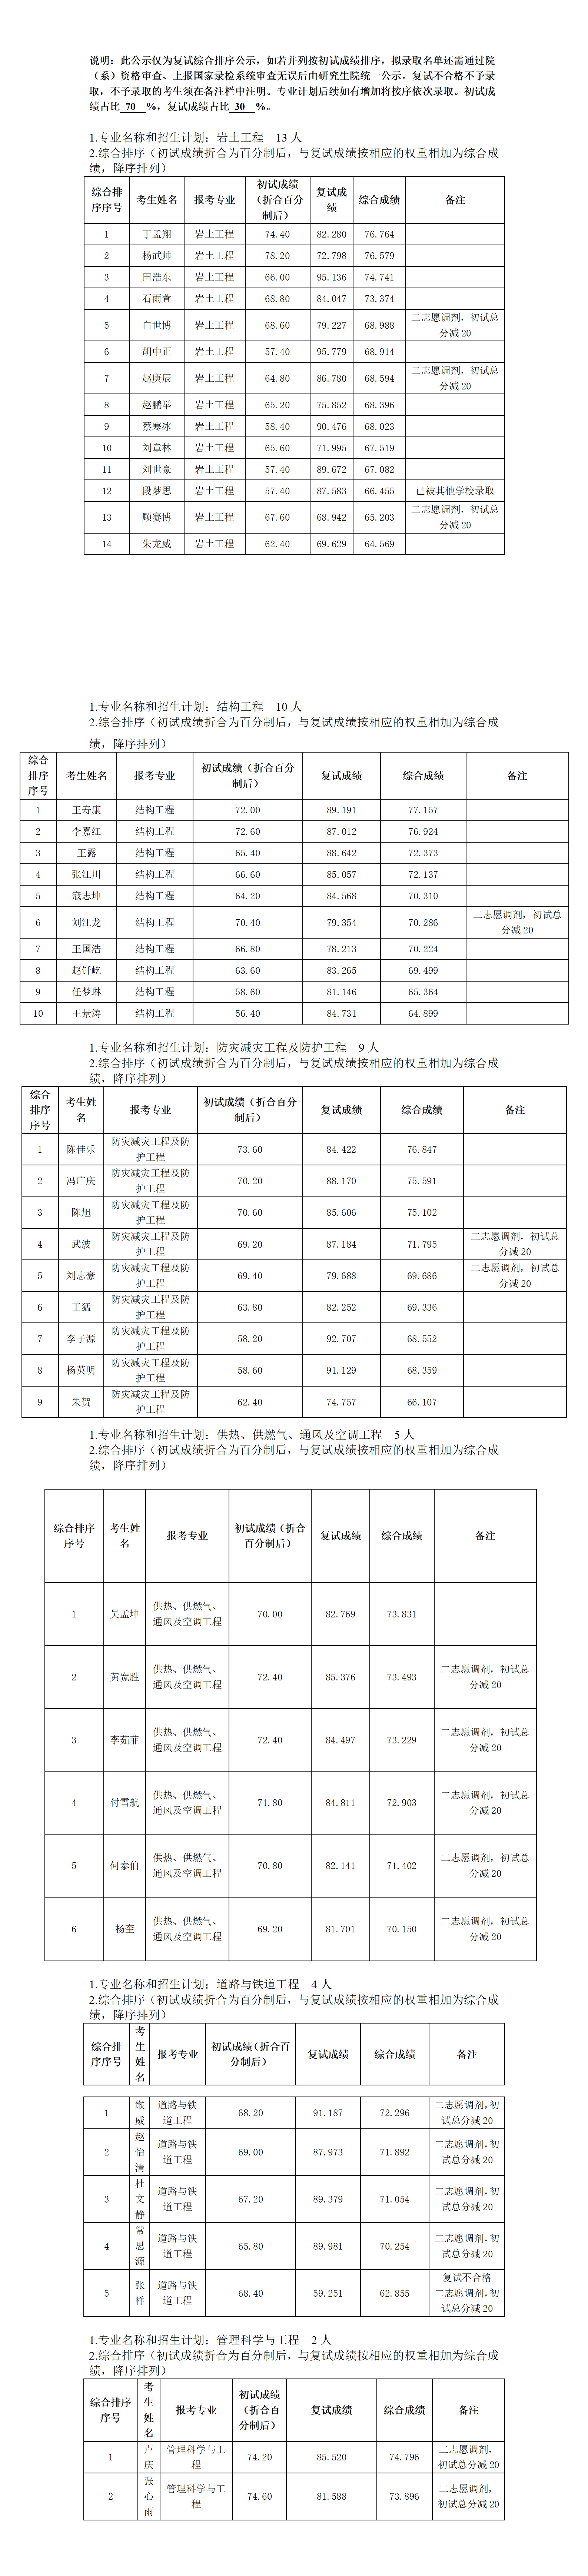 郑州大学2022年硕士研究生复试结果综合排序公示表—第2批_01.png